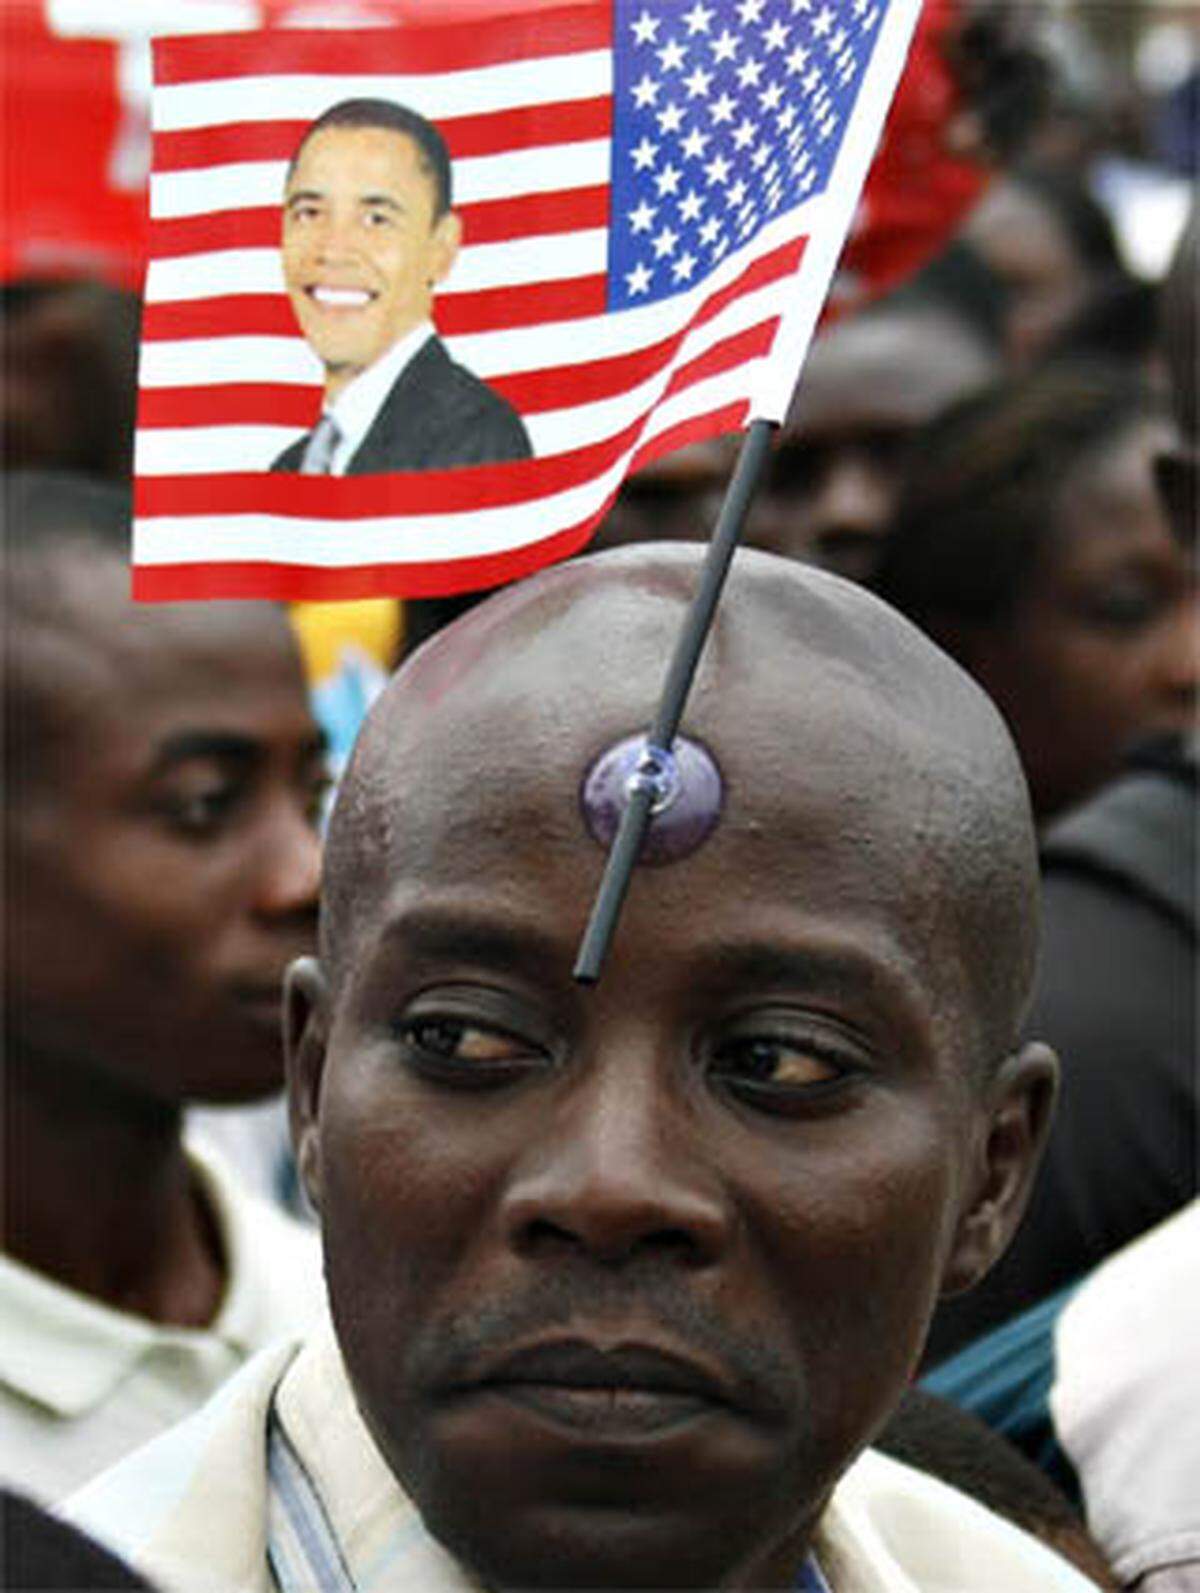 Bevor es zurück in die Vereinigten Staaten ging, schaute Obama noch in Ghana vorbei. Afrikas Vorzeigestaat ist somit das erste afrikanische Land, das Obama seit seiner Amtsübernahme besuchte.Auf den Straßen der Hauptstadt Accra bereiteten hunderte Menschen Obama einen begeisterten Empfang.